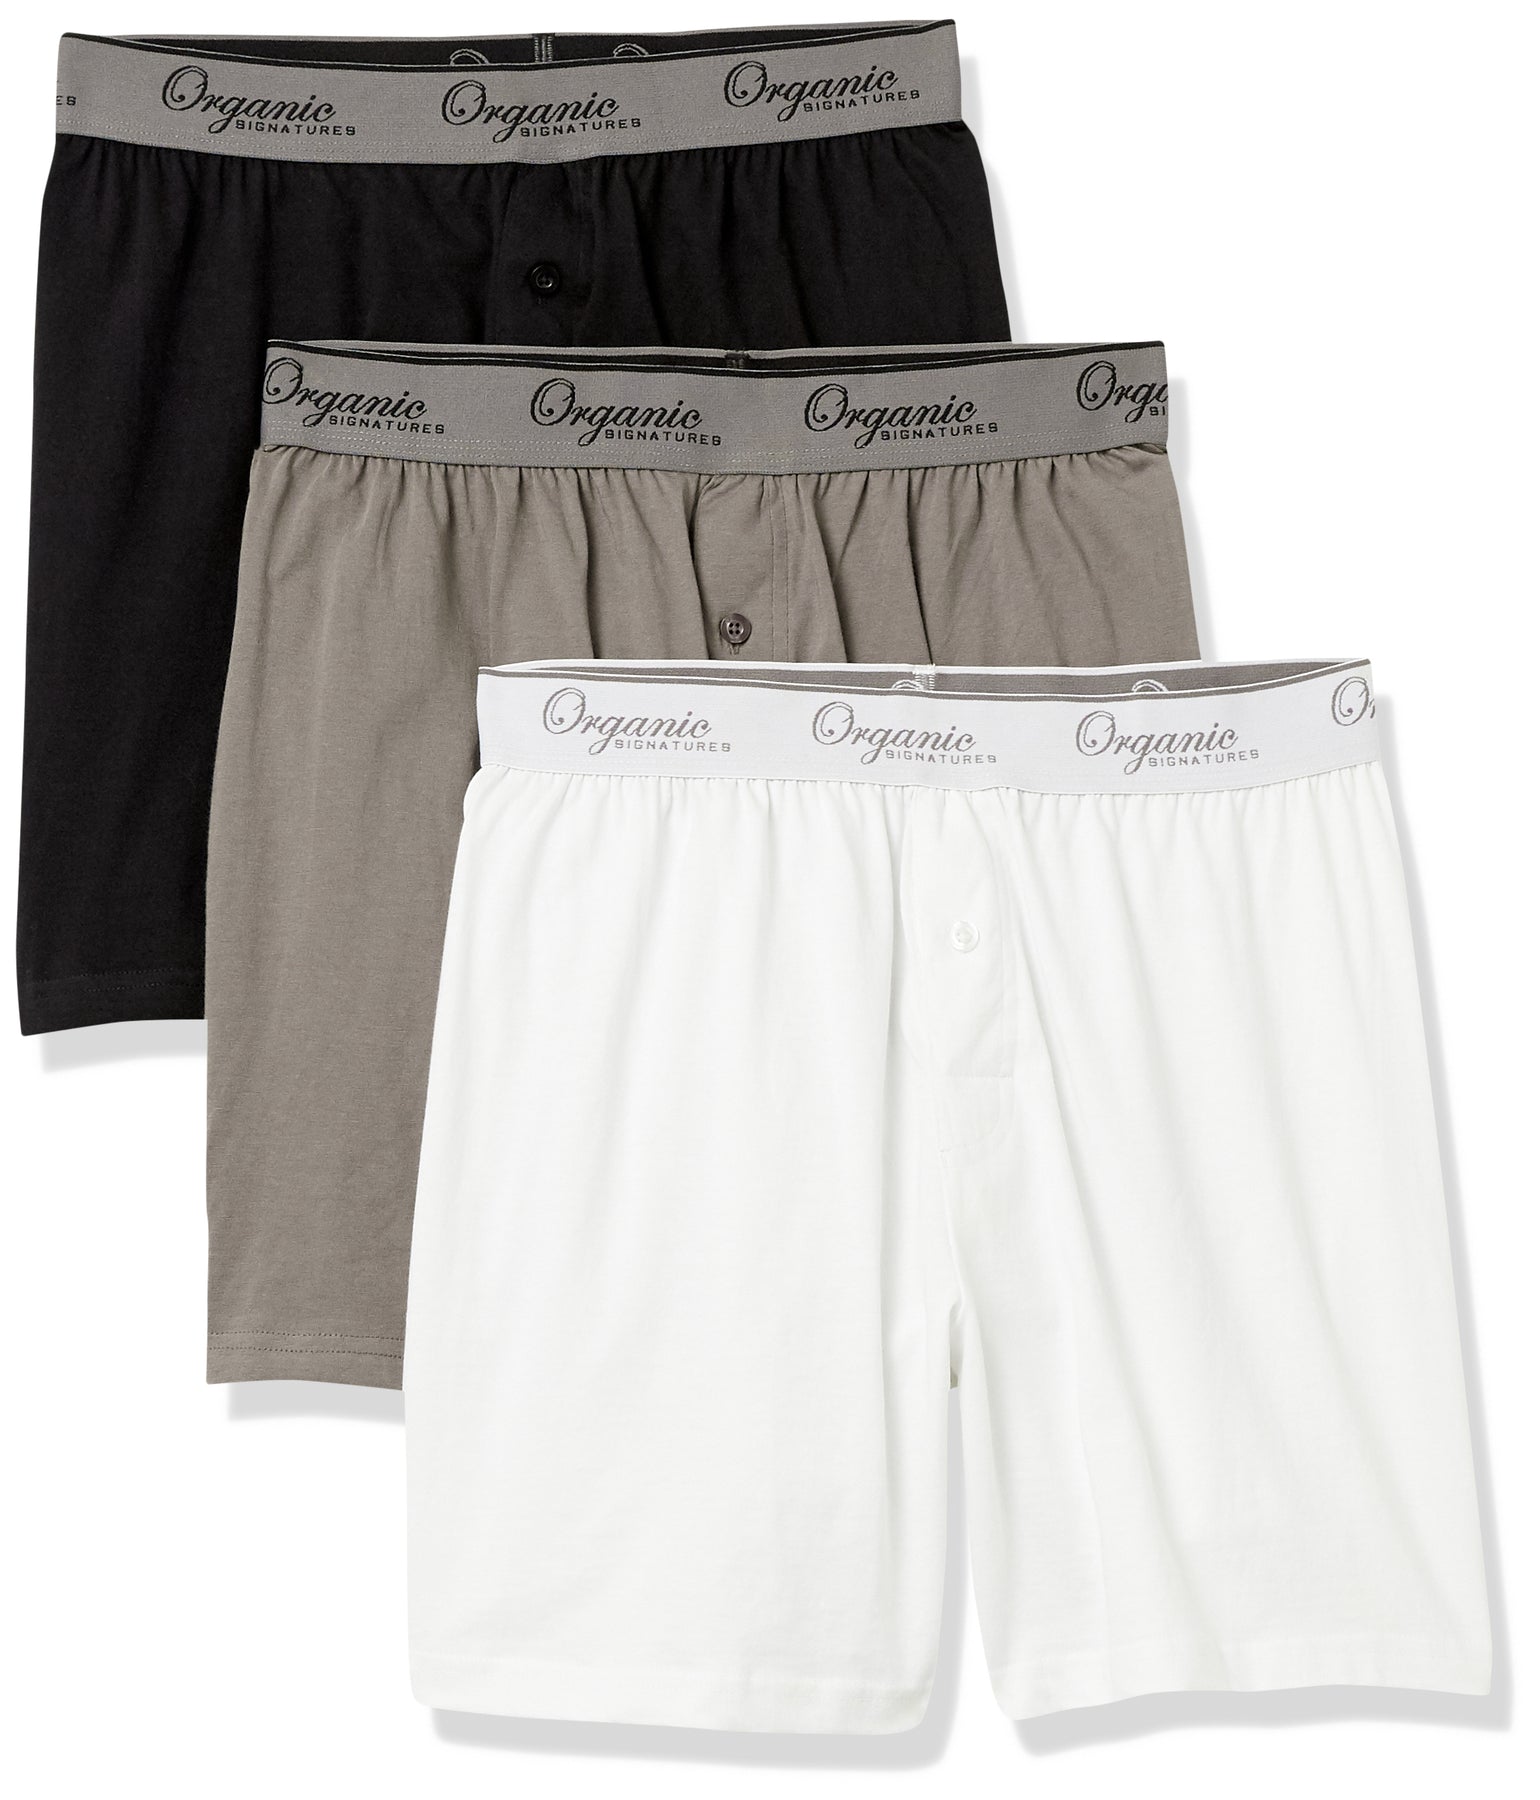 Men's Boxers - Cotton Boxer Shorts